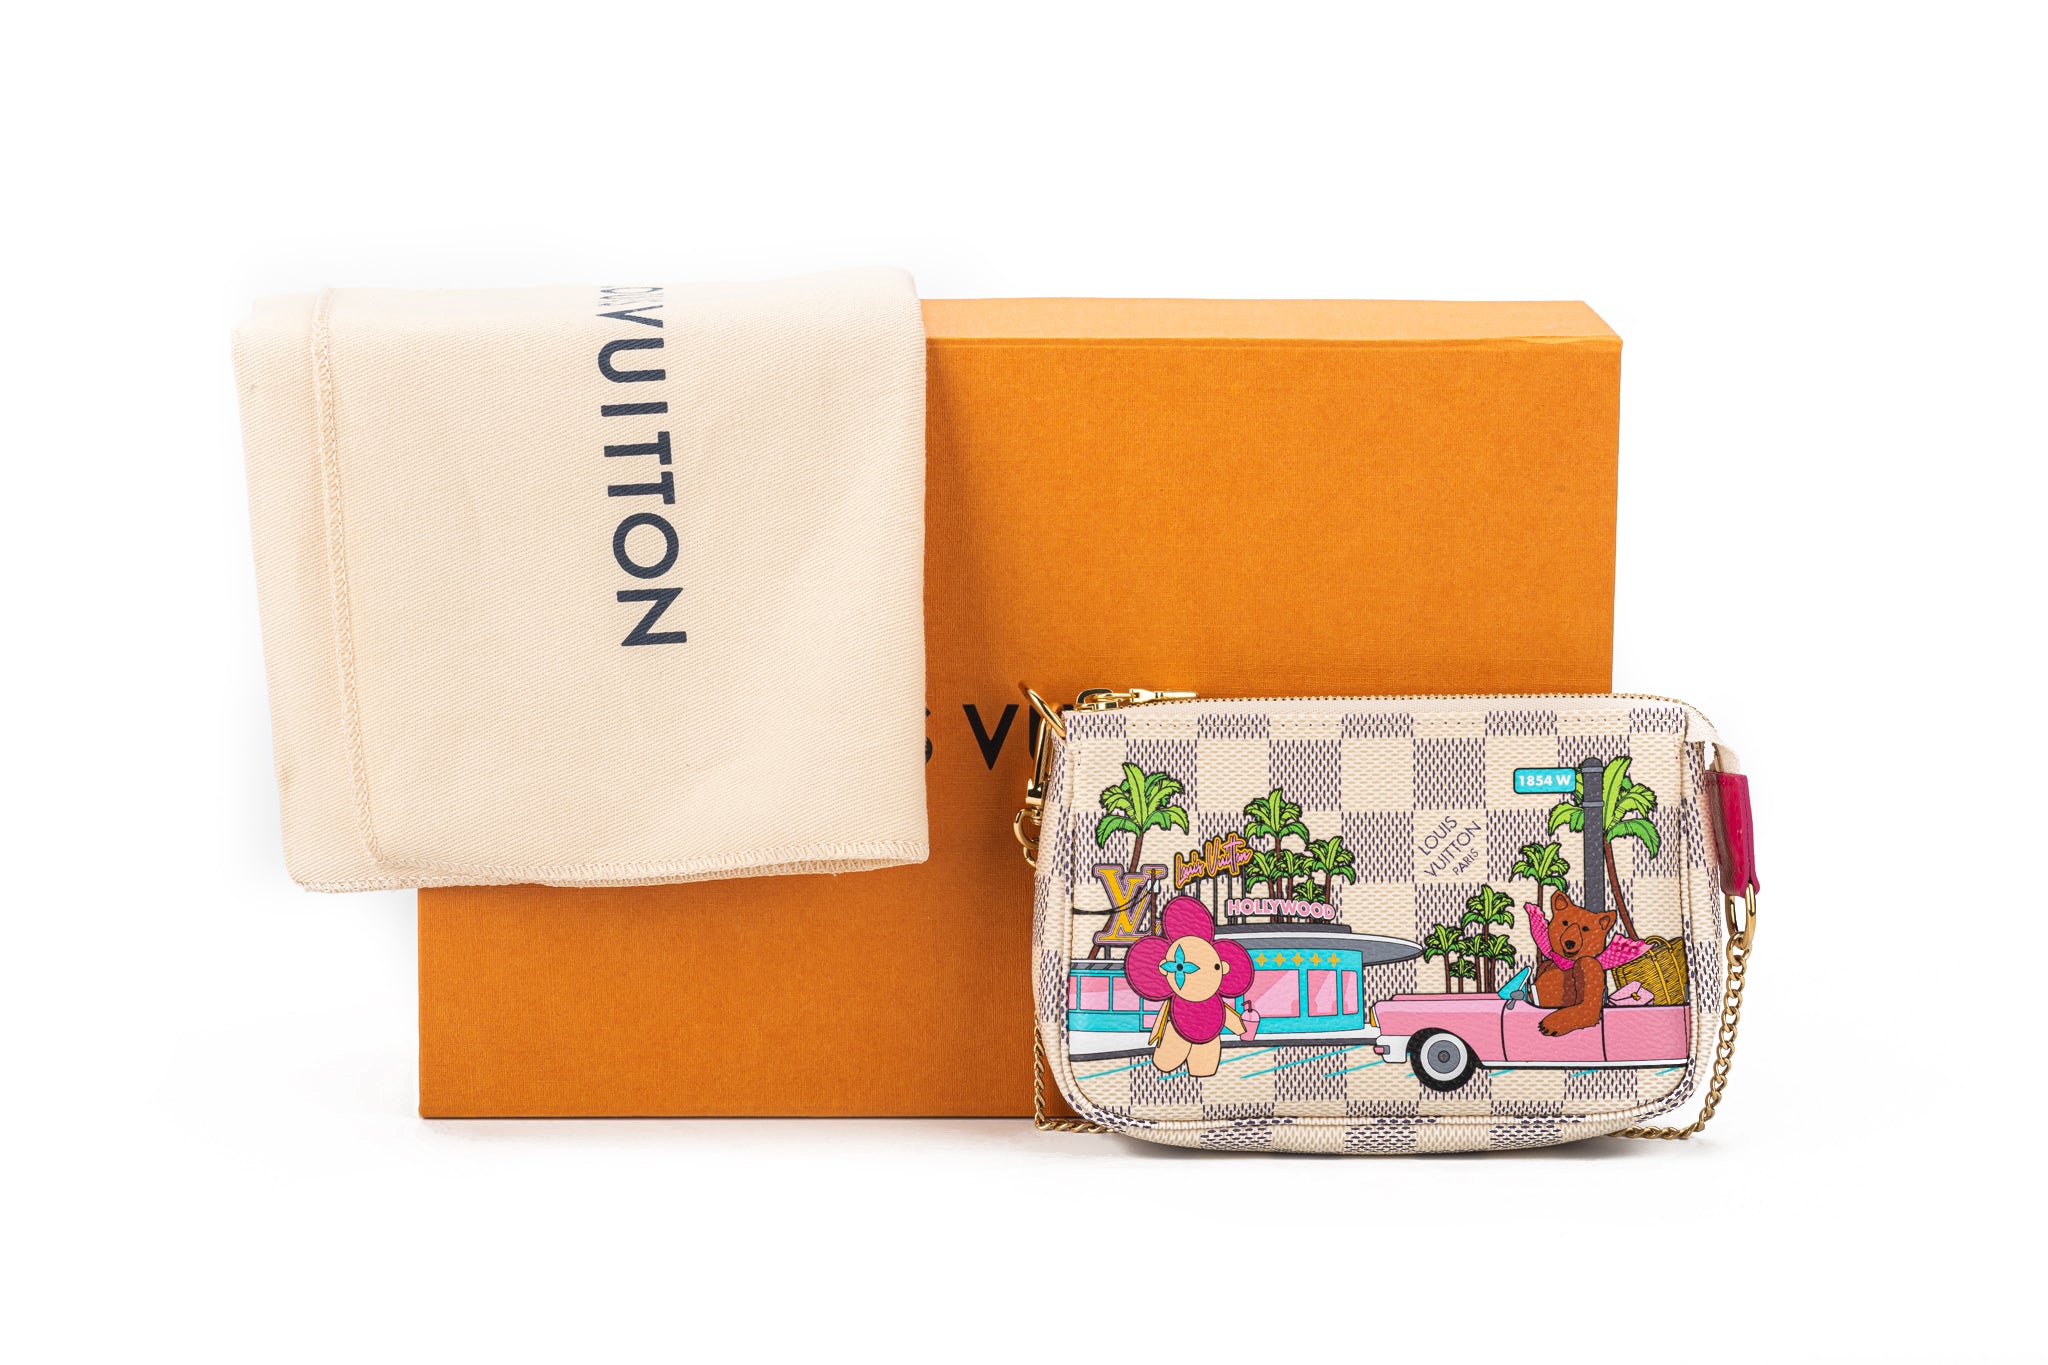 Louis Vuitton Vivienne Christmas Bag - Vintage Lux